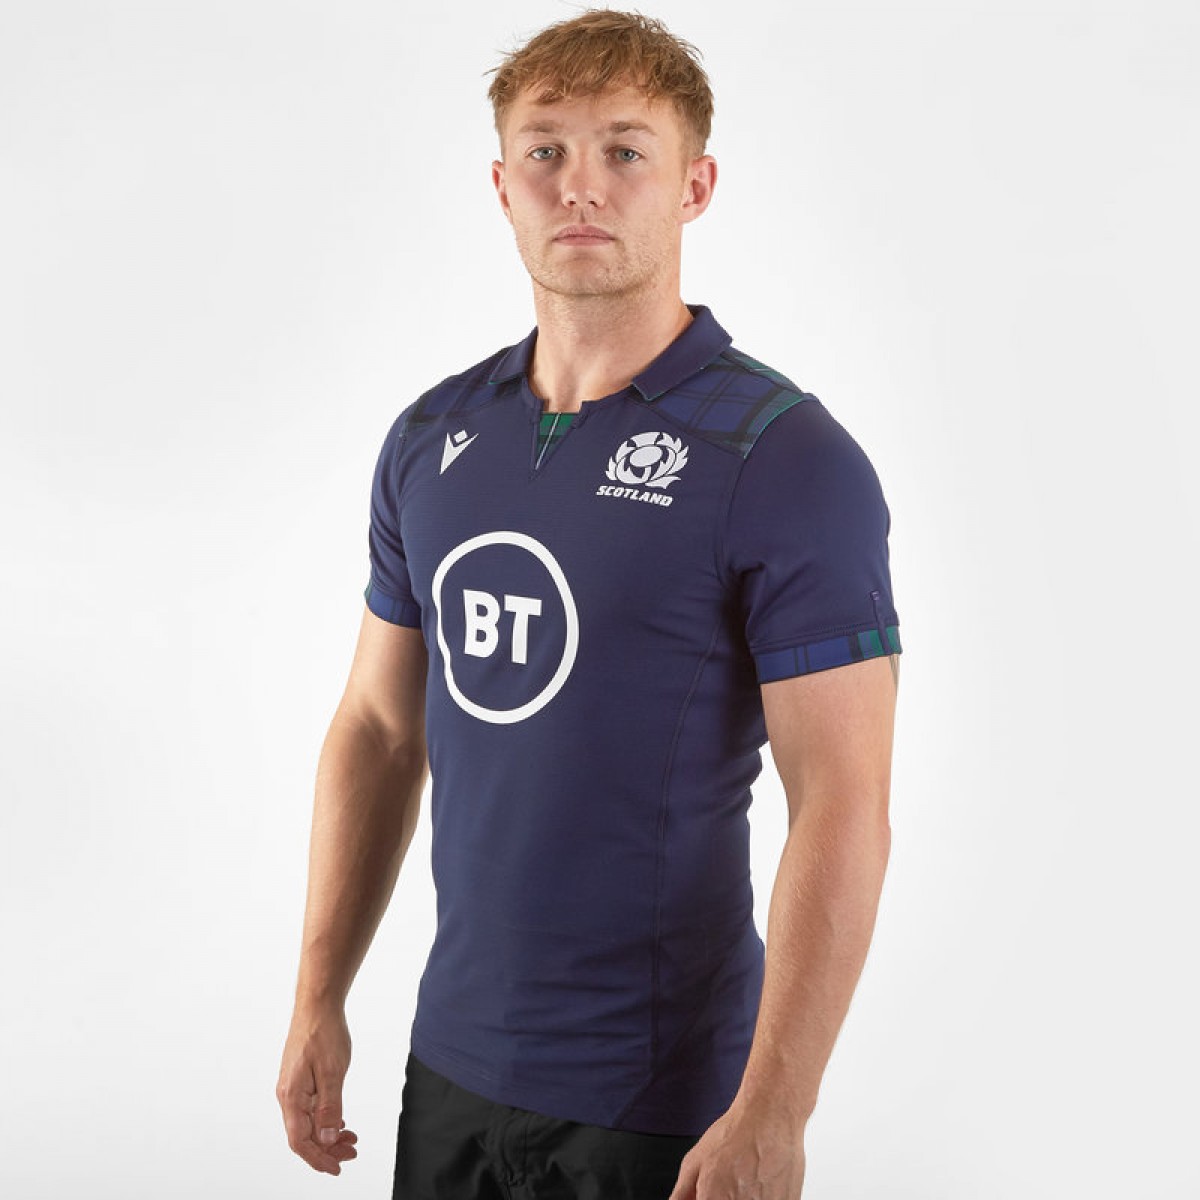 Herren-Halbarm Lässige Sportbekleidung,S ZHENN Rugbytrikot 2019 Weltmeisterschaft Schottland zuhause und auswärts Rugby-Trikot 